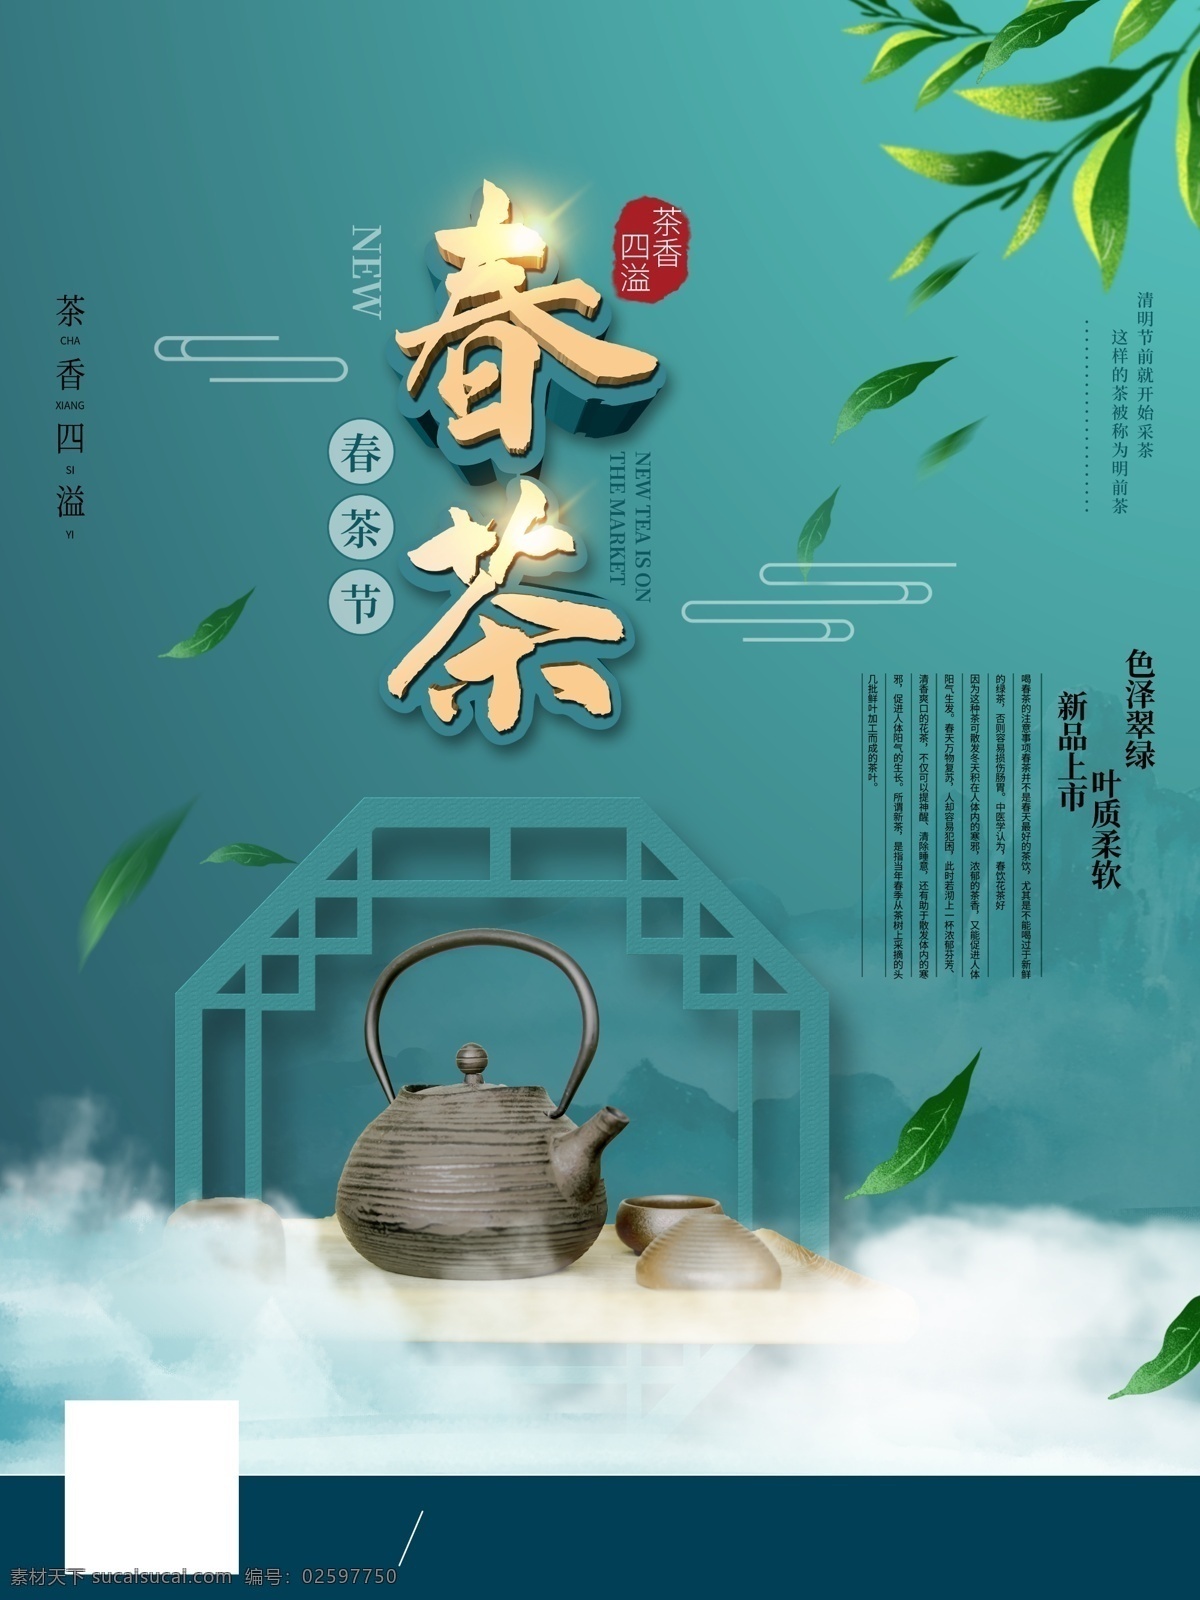 春茶 节 开 茶 新茶 上市 活动 海报 原 创中国 风春茶节开 茶新茶上市 活动海 报